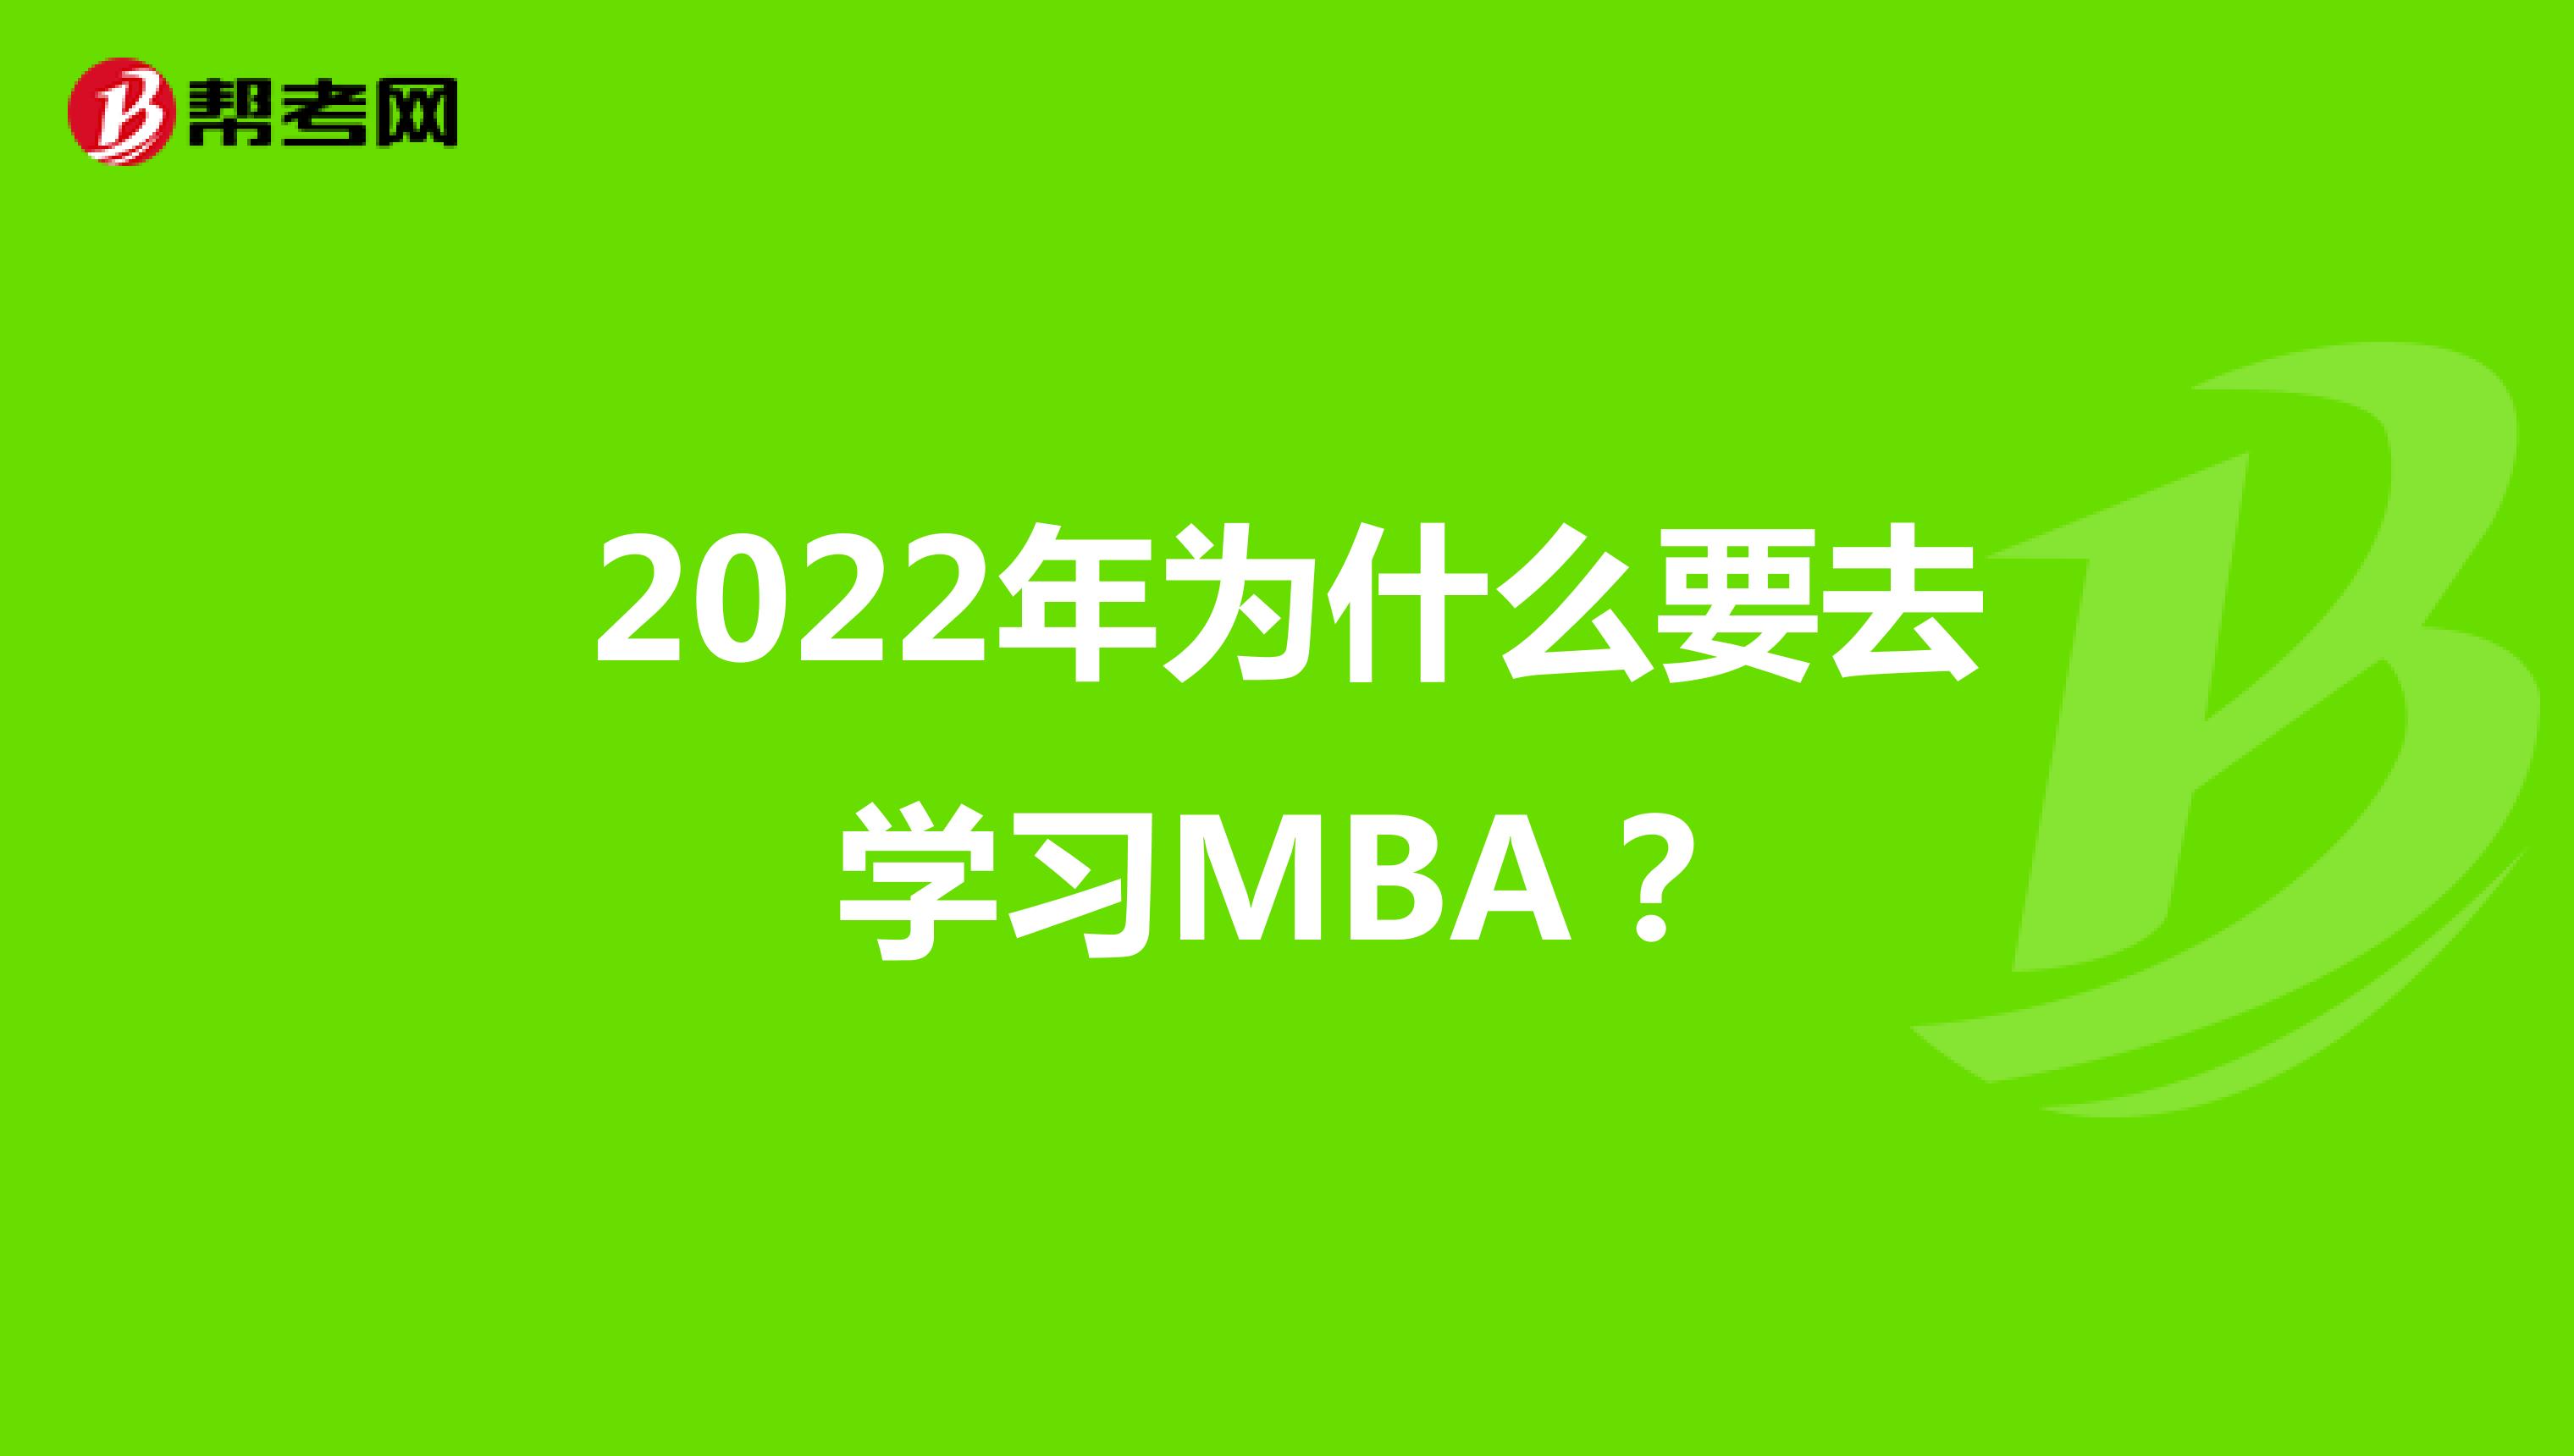 2022年为什么要去学习MBA？